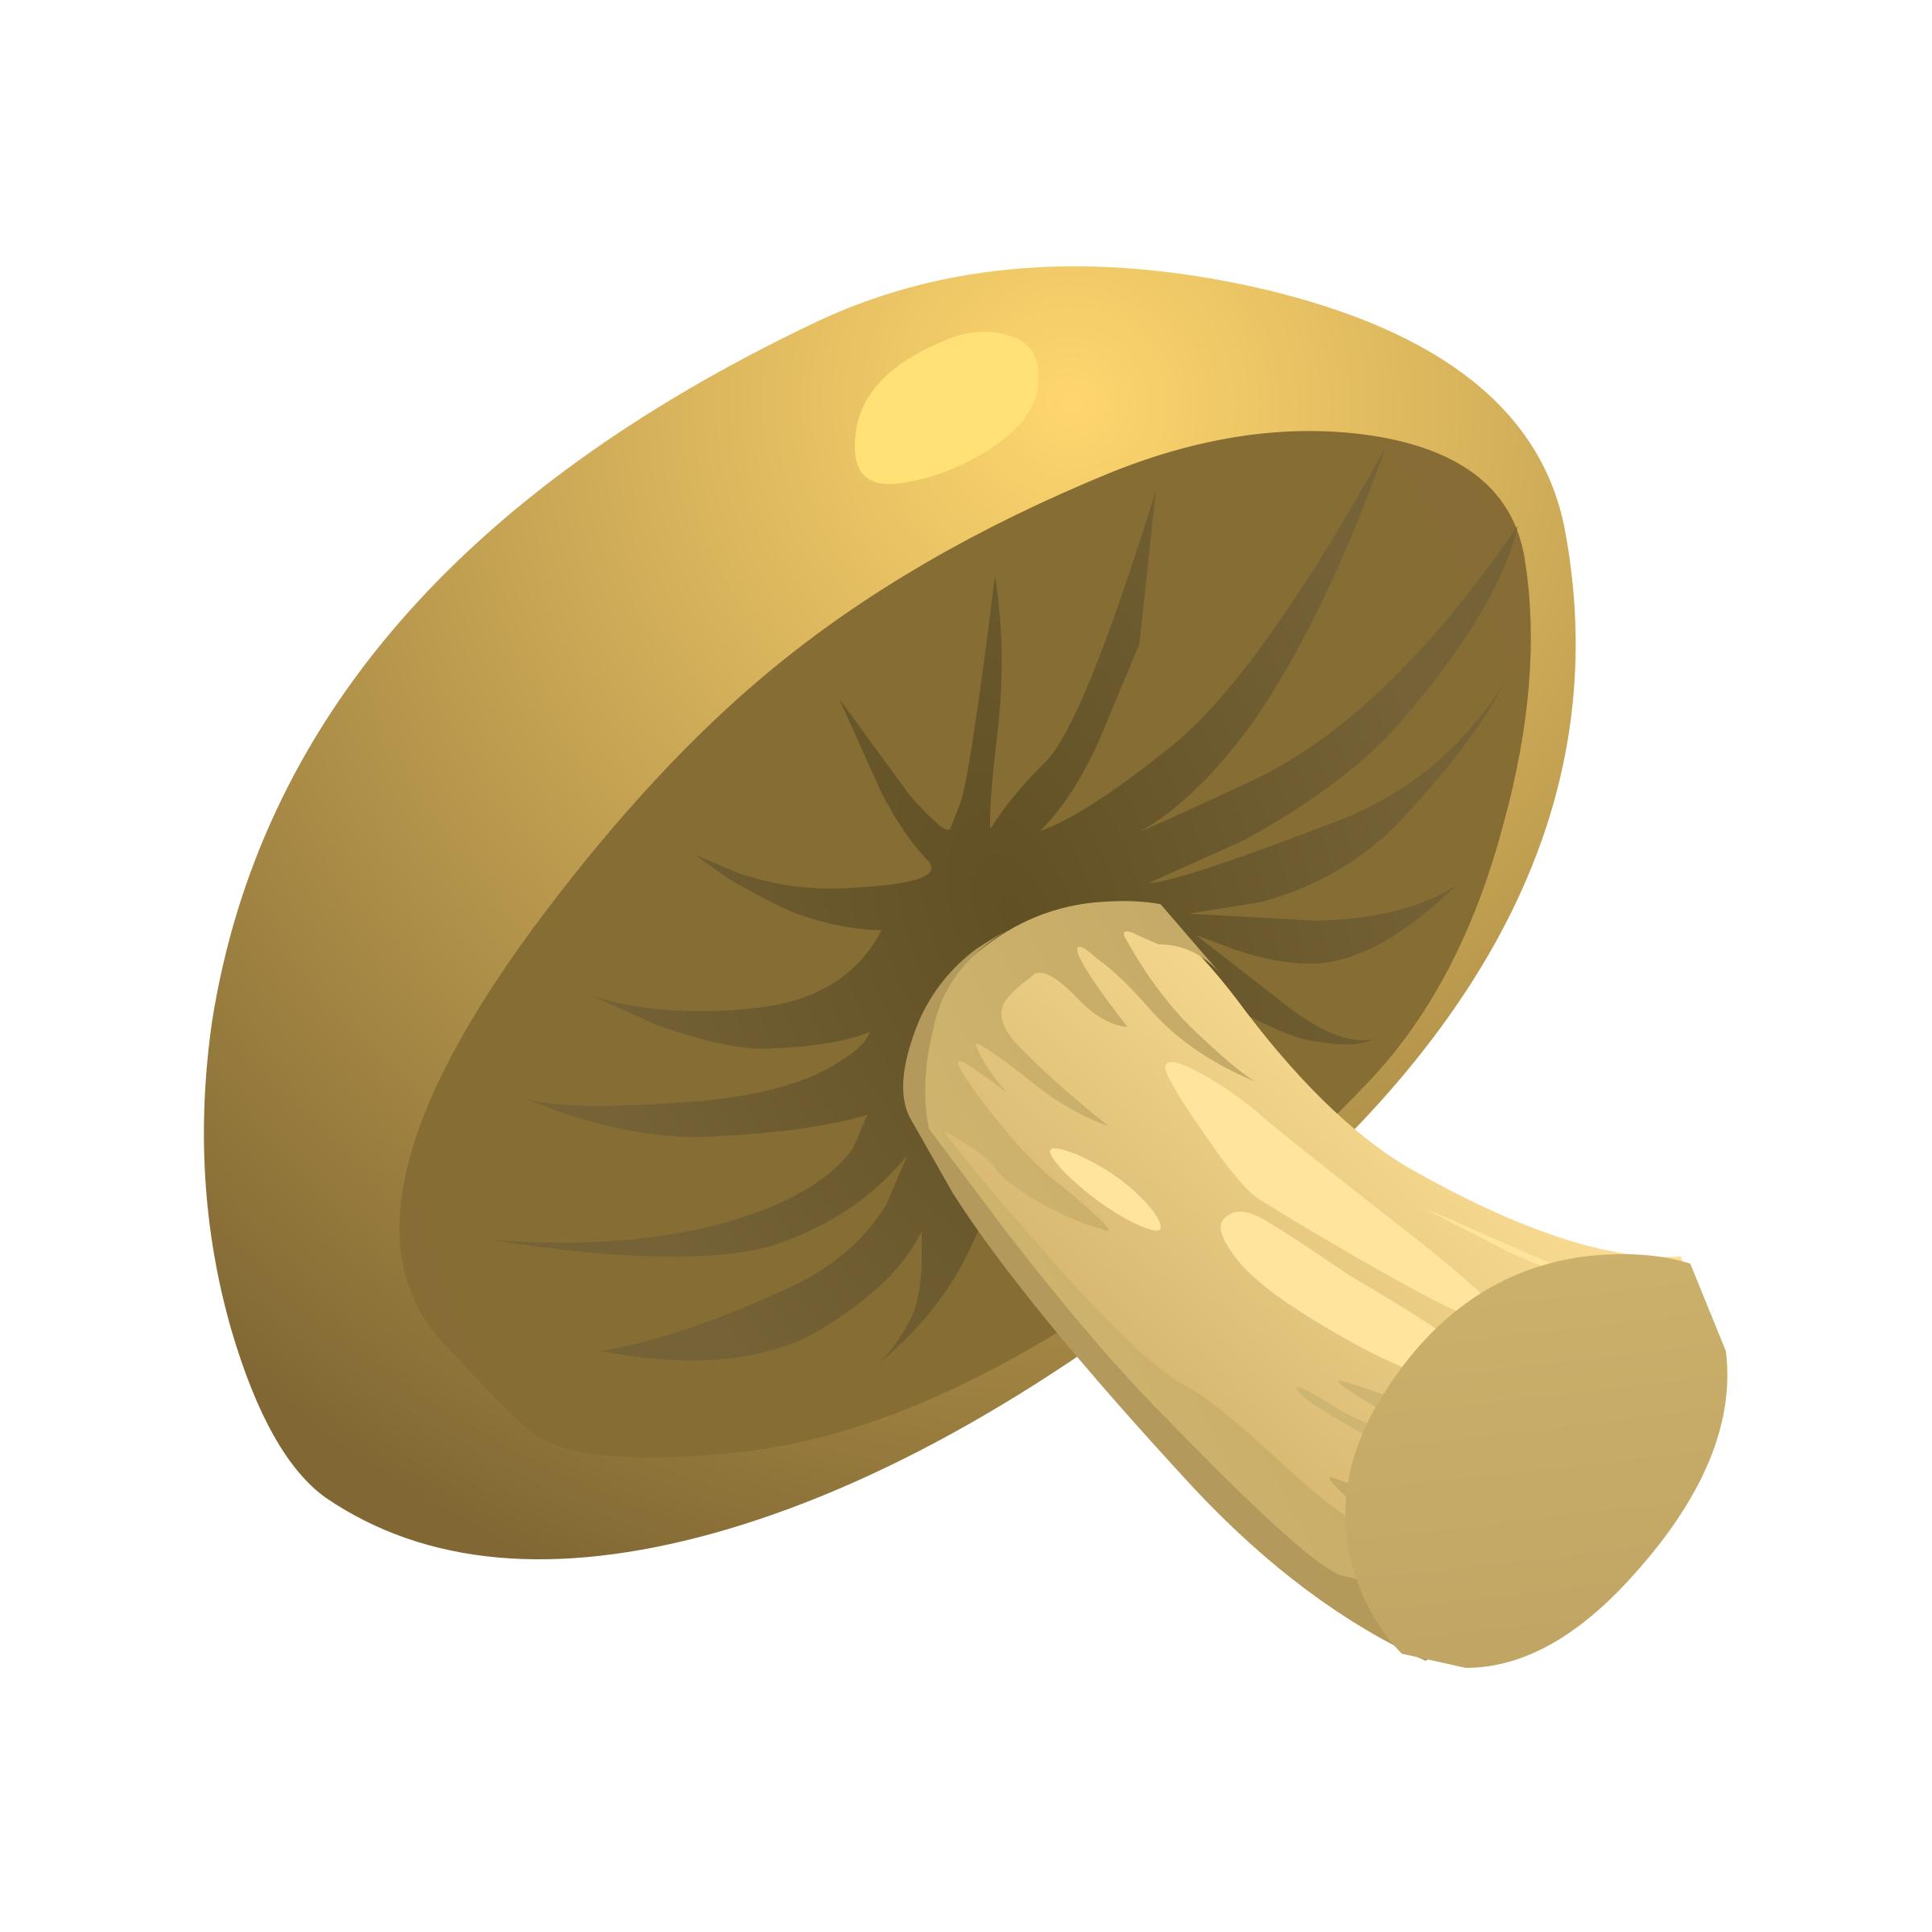 Food Mushroom icons